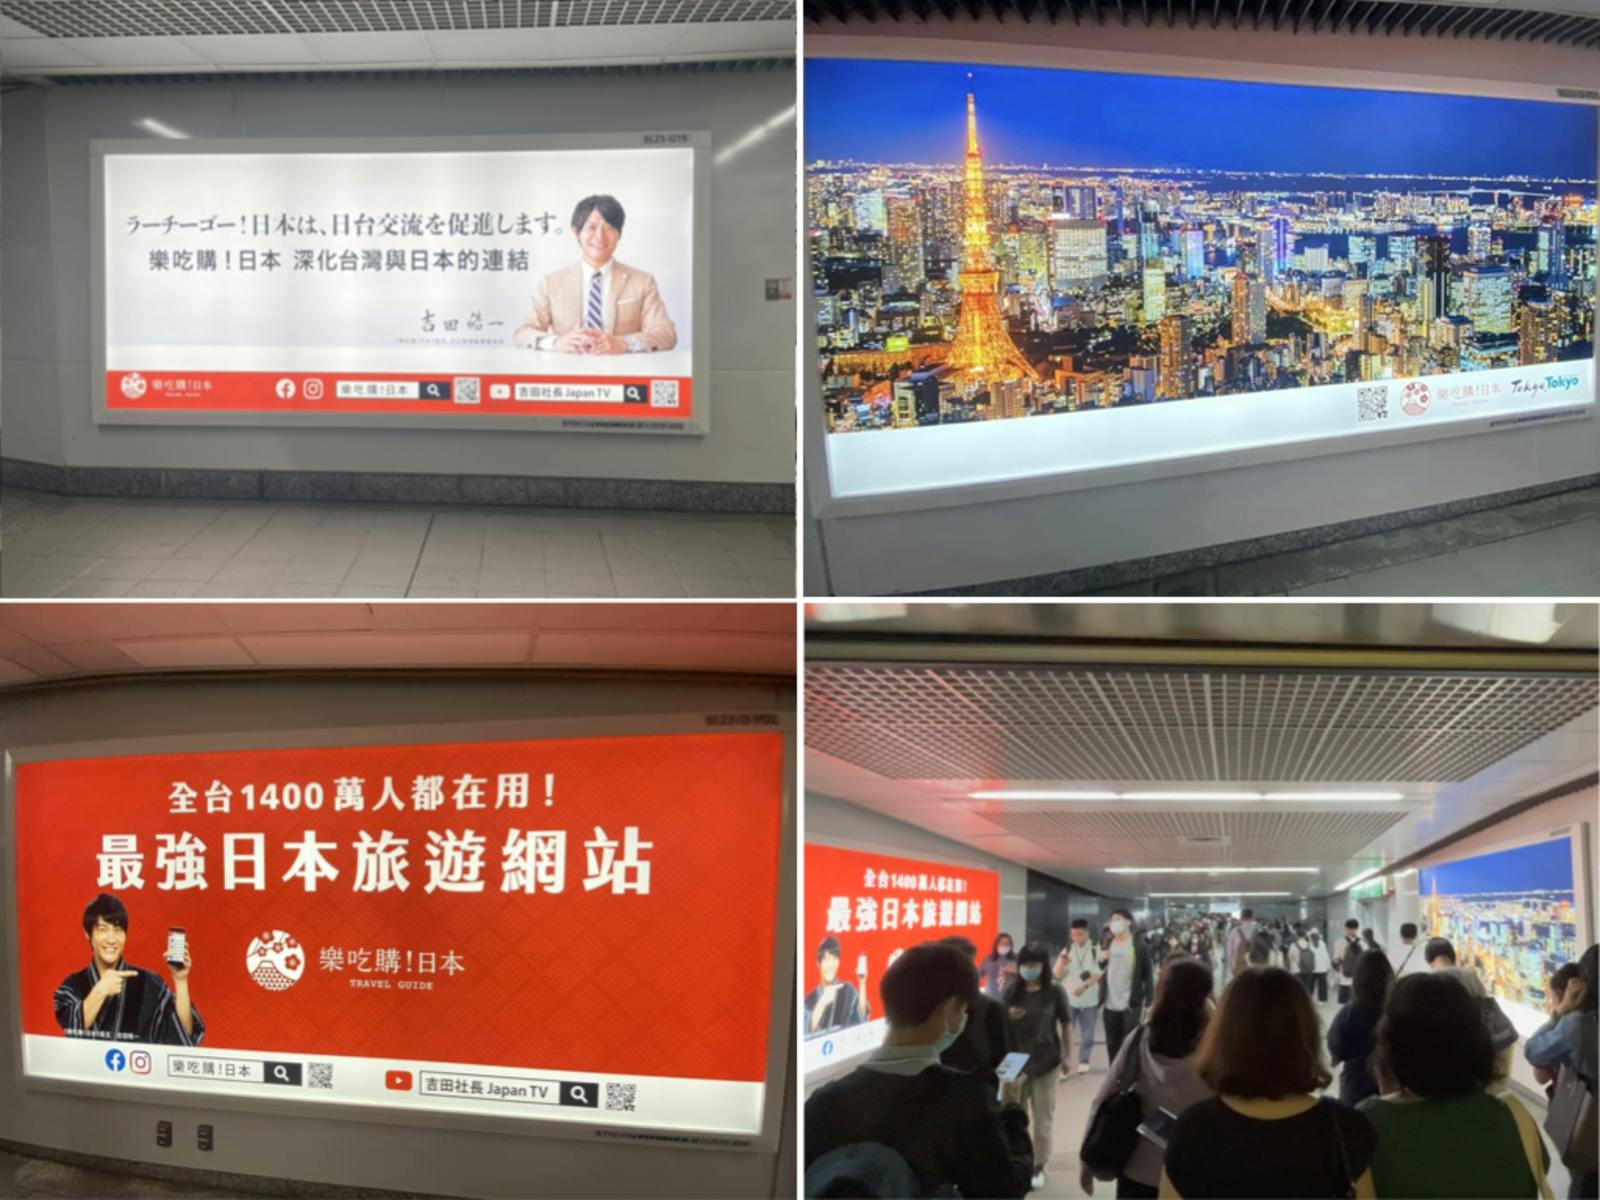 地下鉄の改札前に出された「ラーチーゴー」の広告。台湾では地下鉄に大型の広告が設置されており、PRの一手法となっている